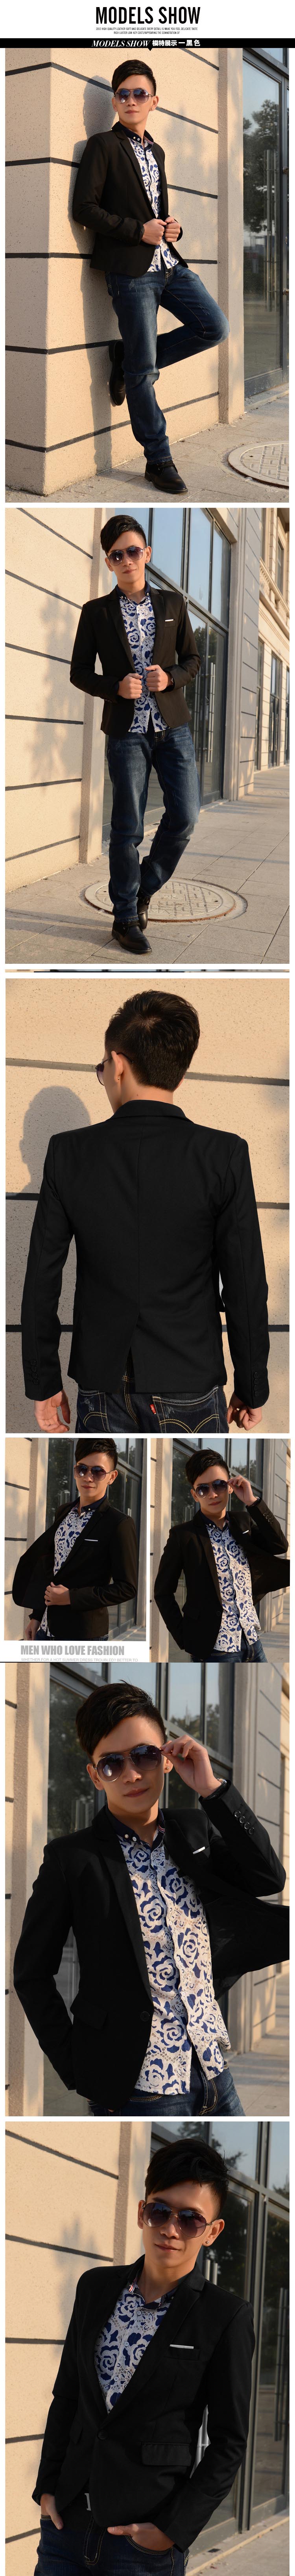 jual jas pria dengan desain resmi yang cocok untuk dipakai keacara formal seperti party dan kantor